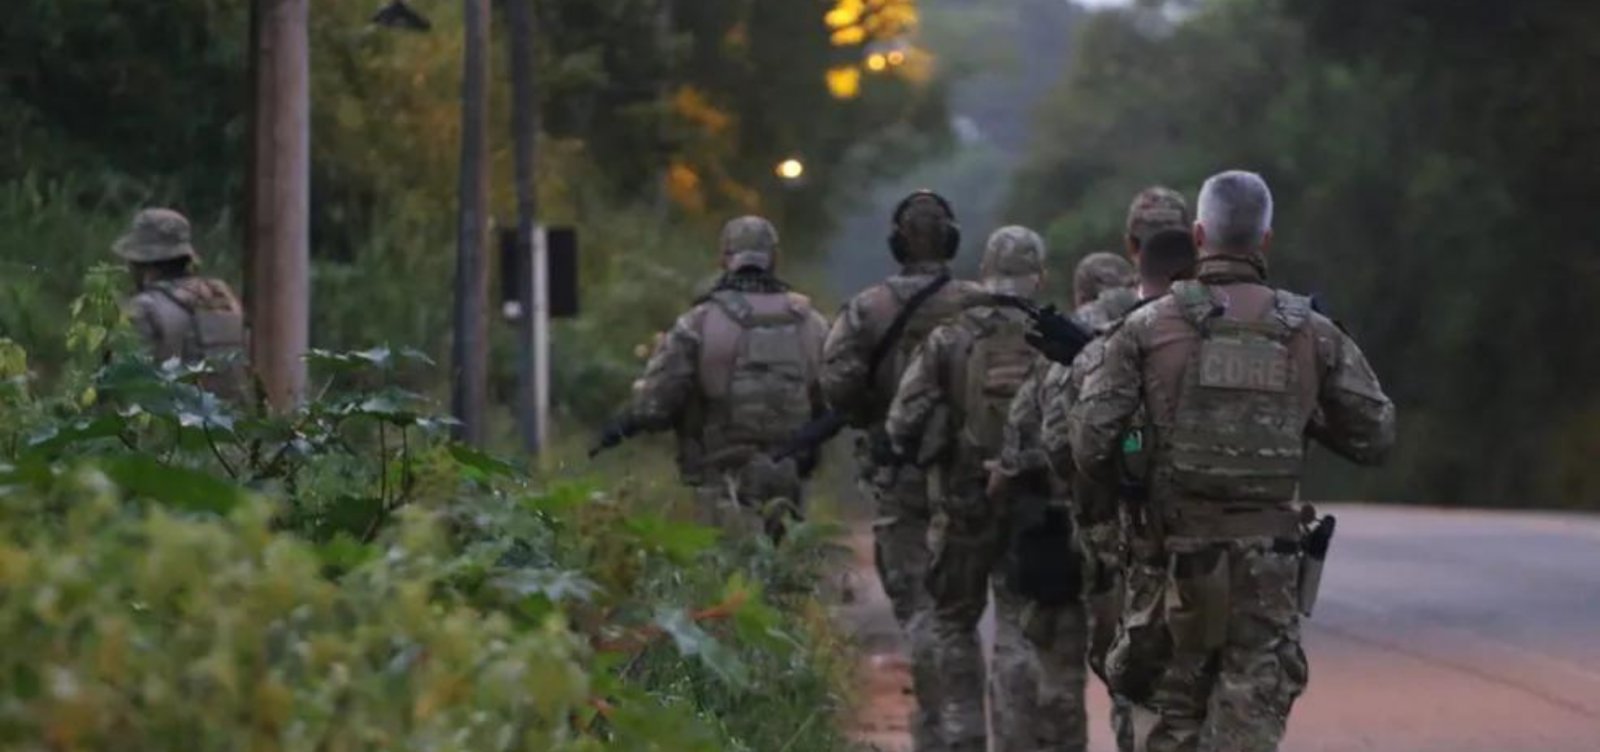 Policial federal e dois suspeitos morrem durante operação em Salvador